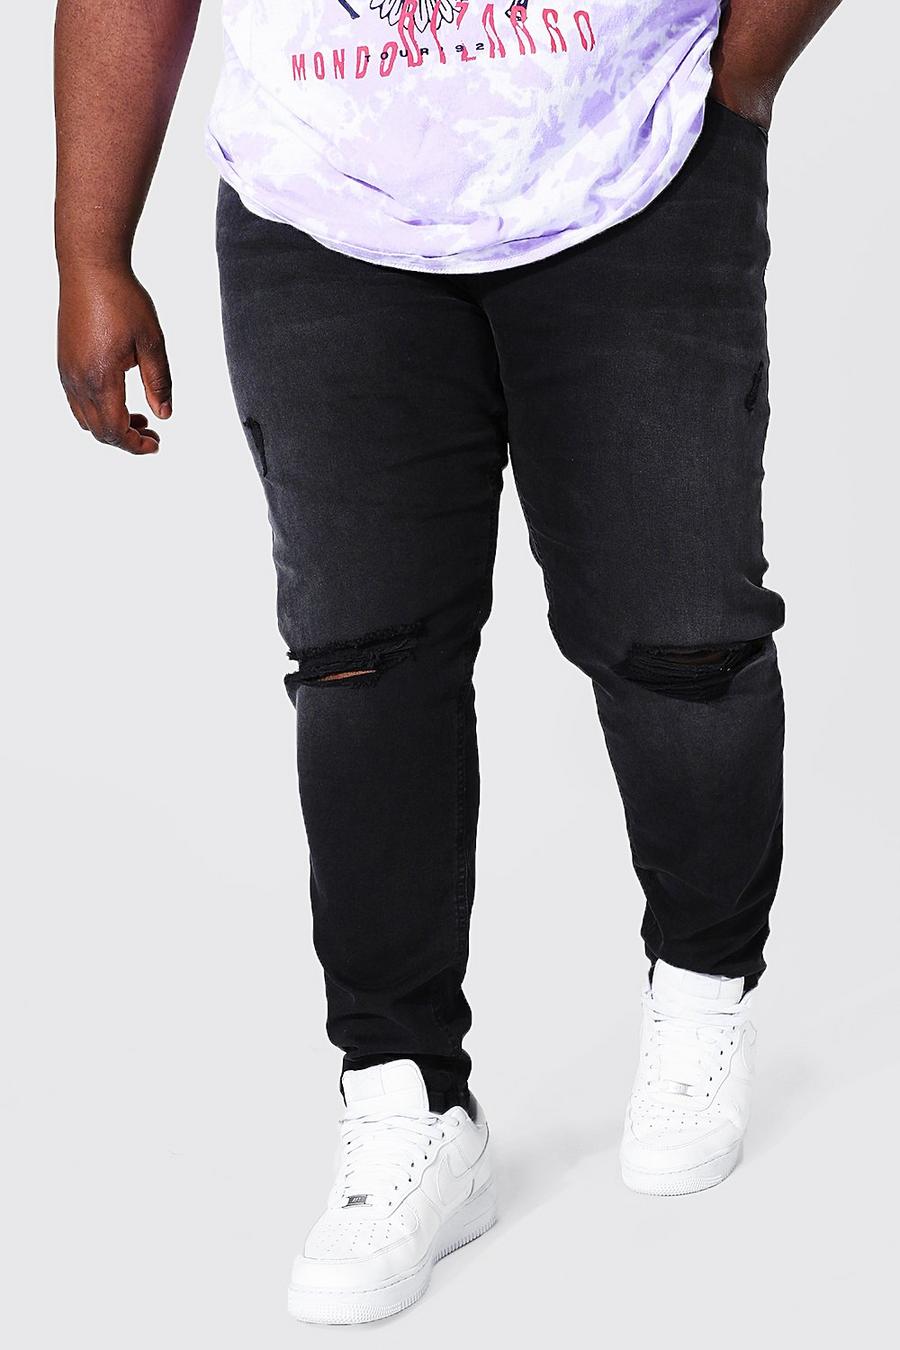 שחור דהוי סקיני ג'ינס מבד נמתח עם קרעים גדולים בברך, מידות גדולות image number 1